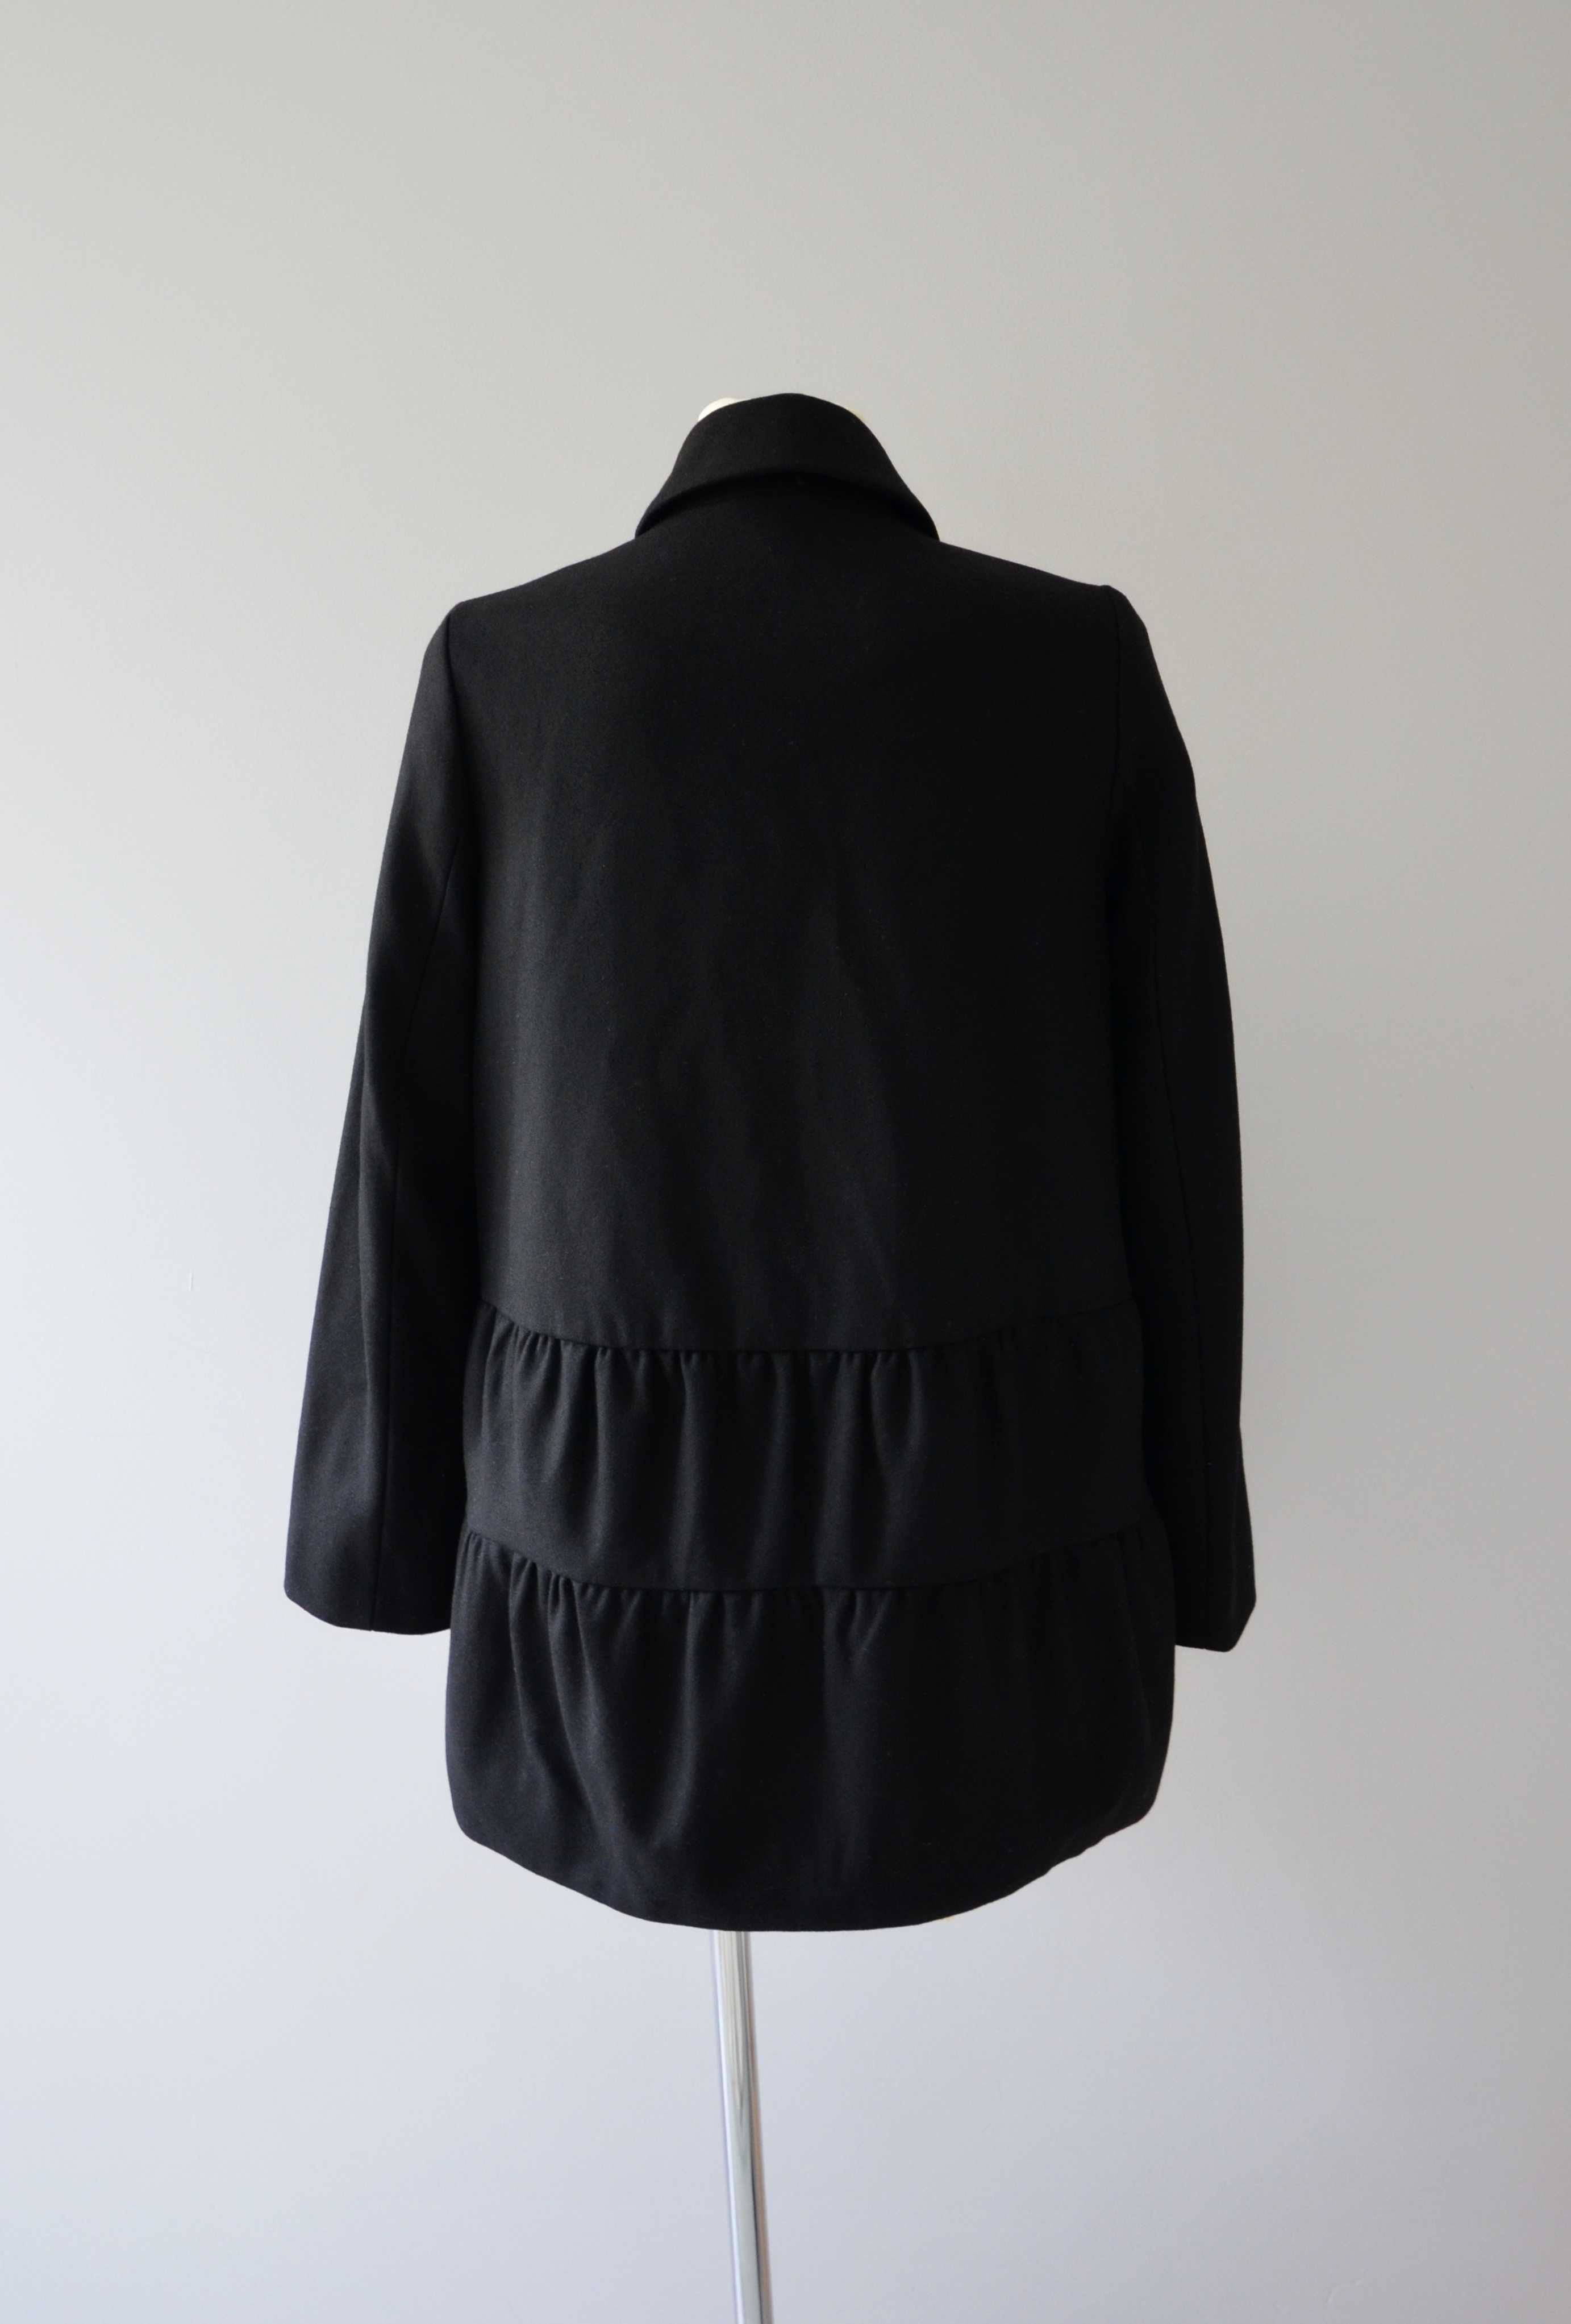 COS czarny krótki płaszcz wełna kaszmir wool cashmere premium 34 XS